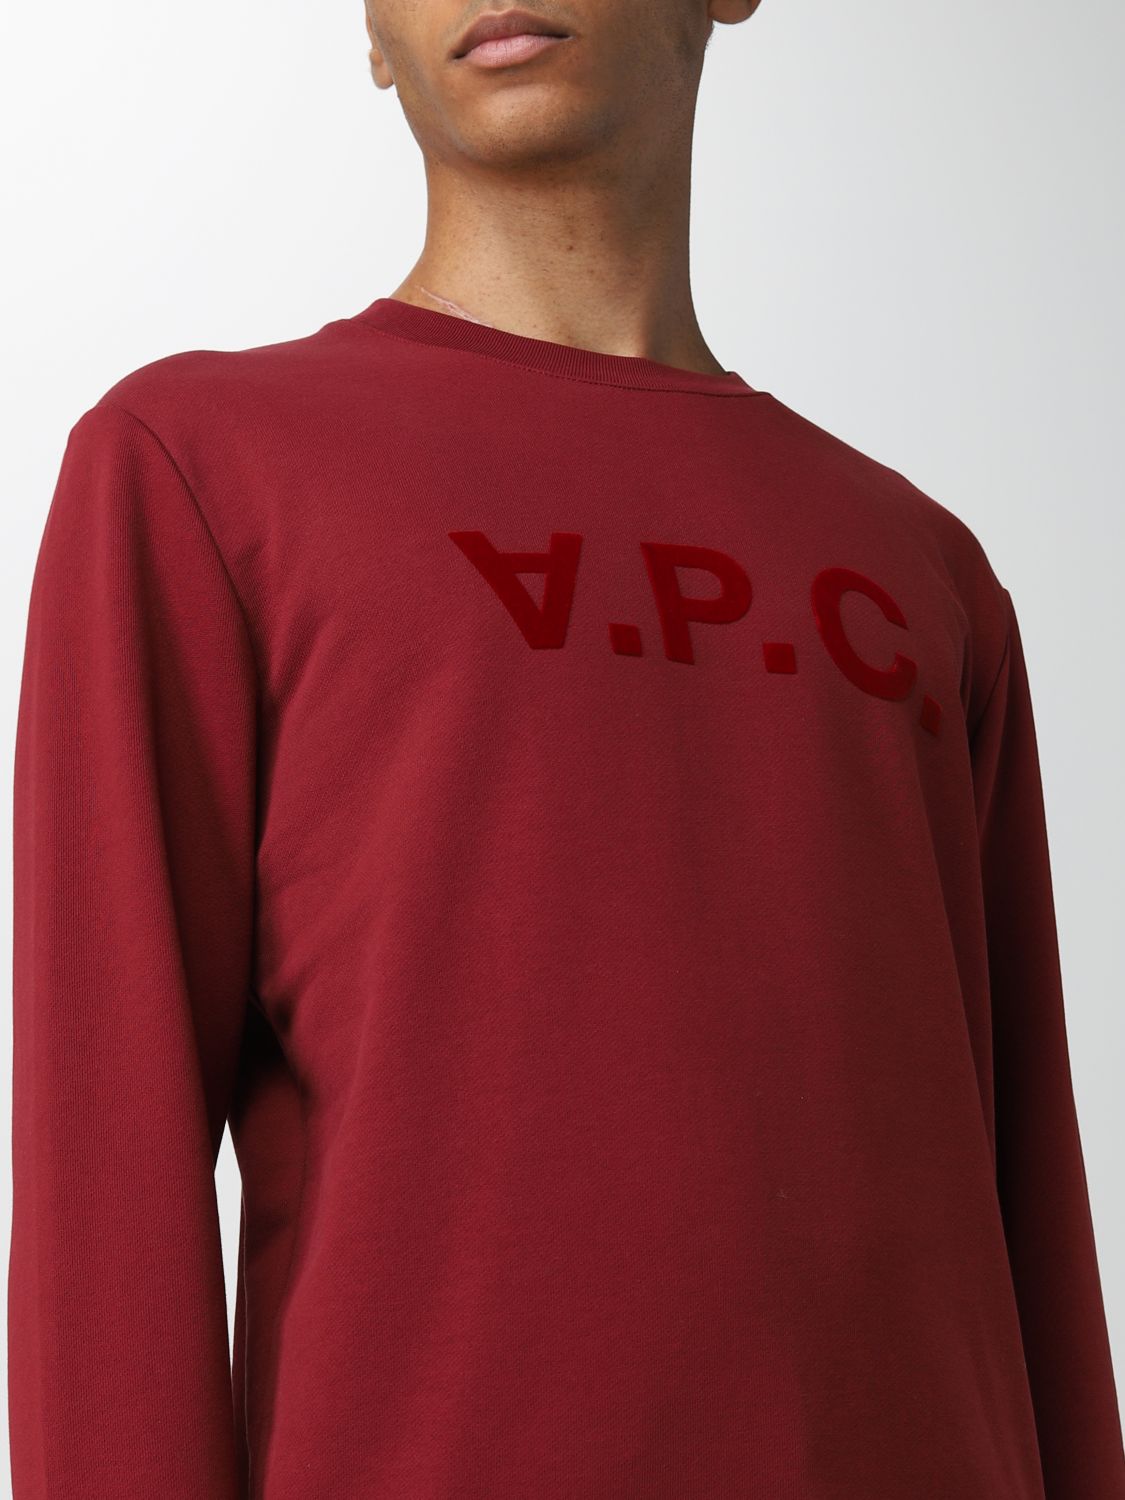 Sweatshirt A.p.c.: Sweatshirt A.p.c. homme bordeaux 4